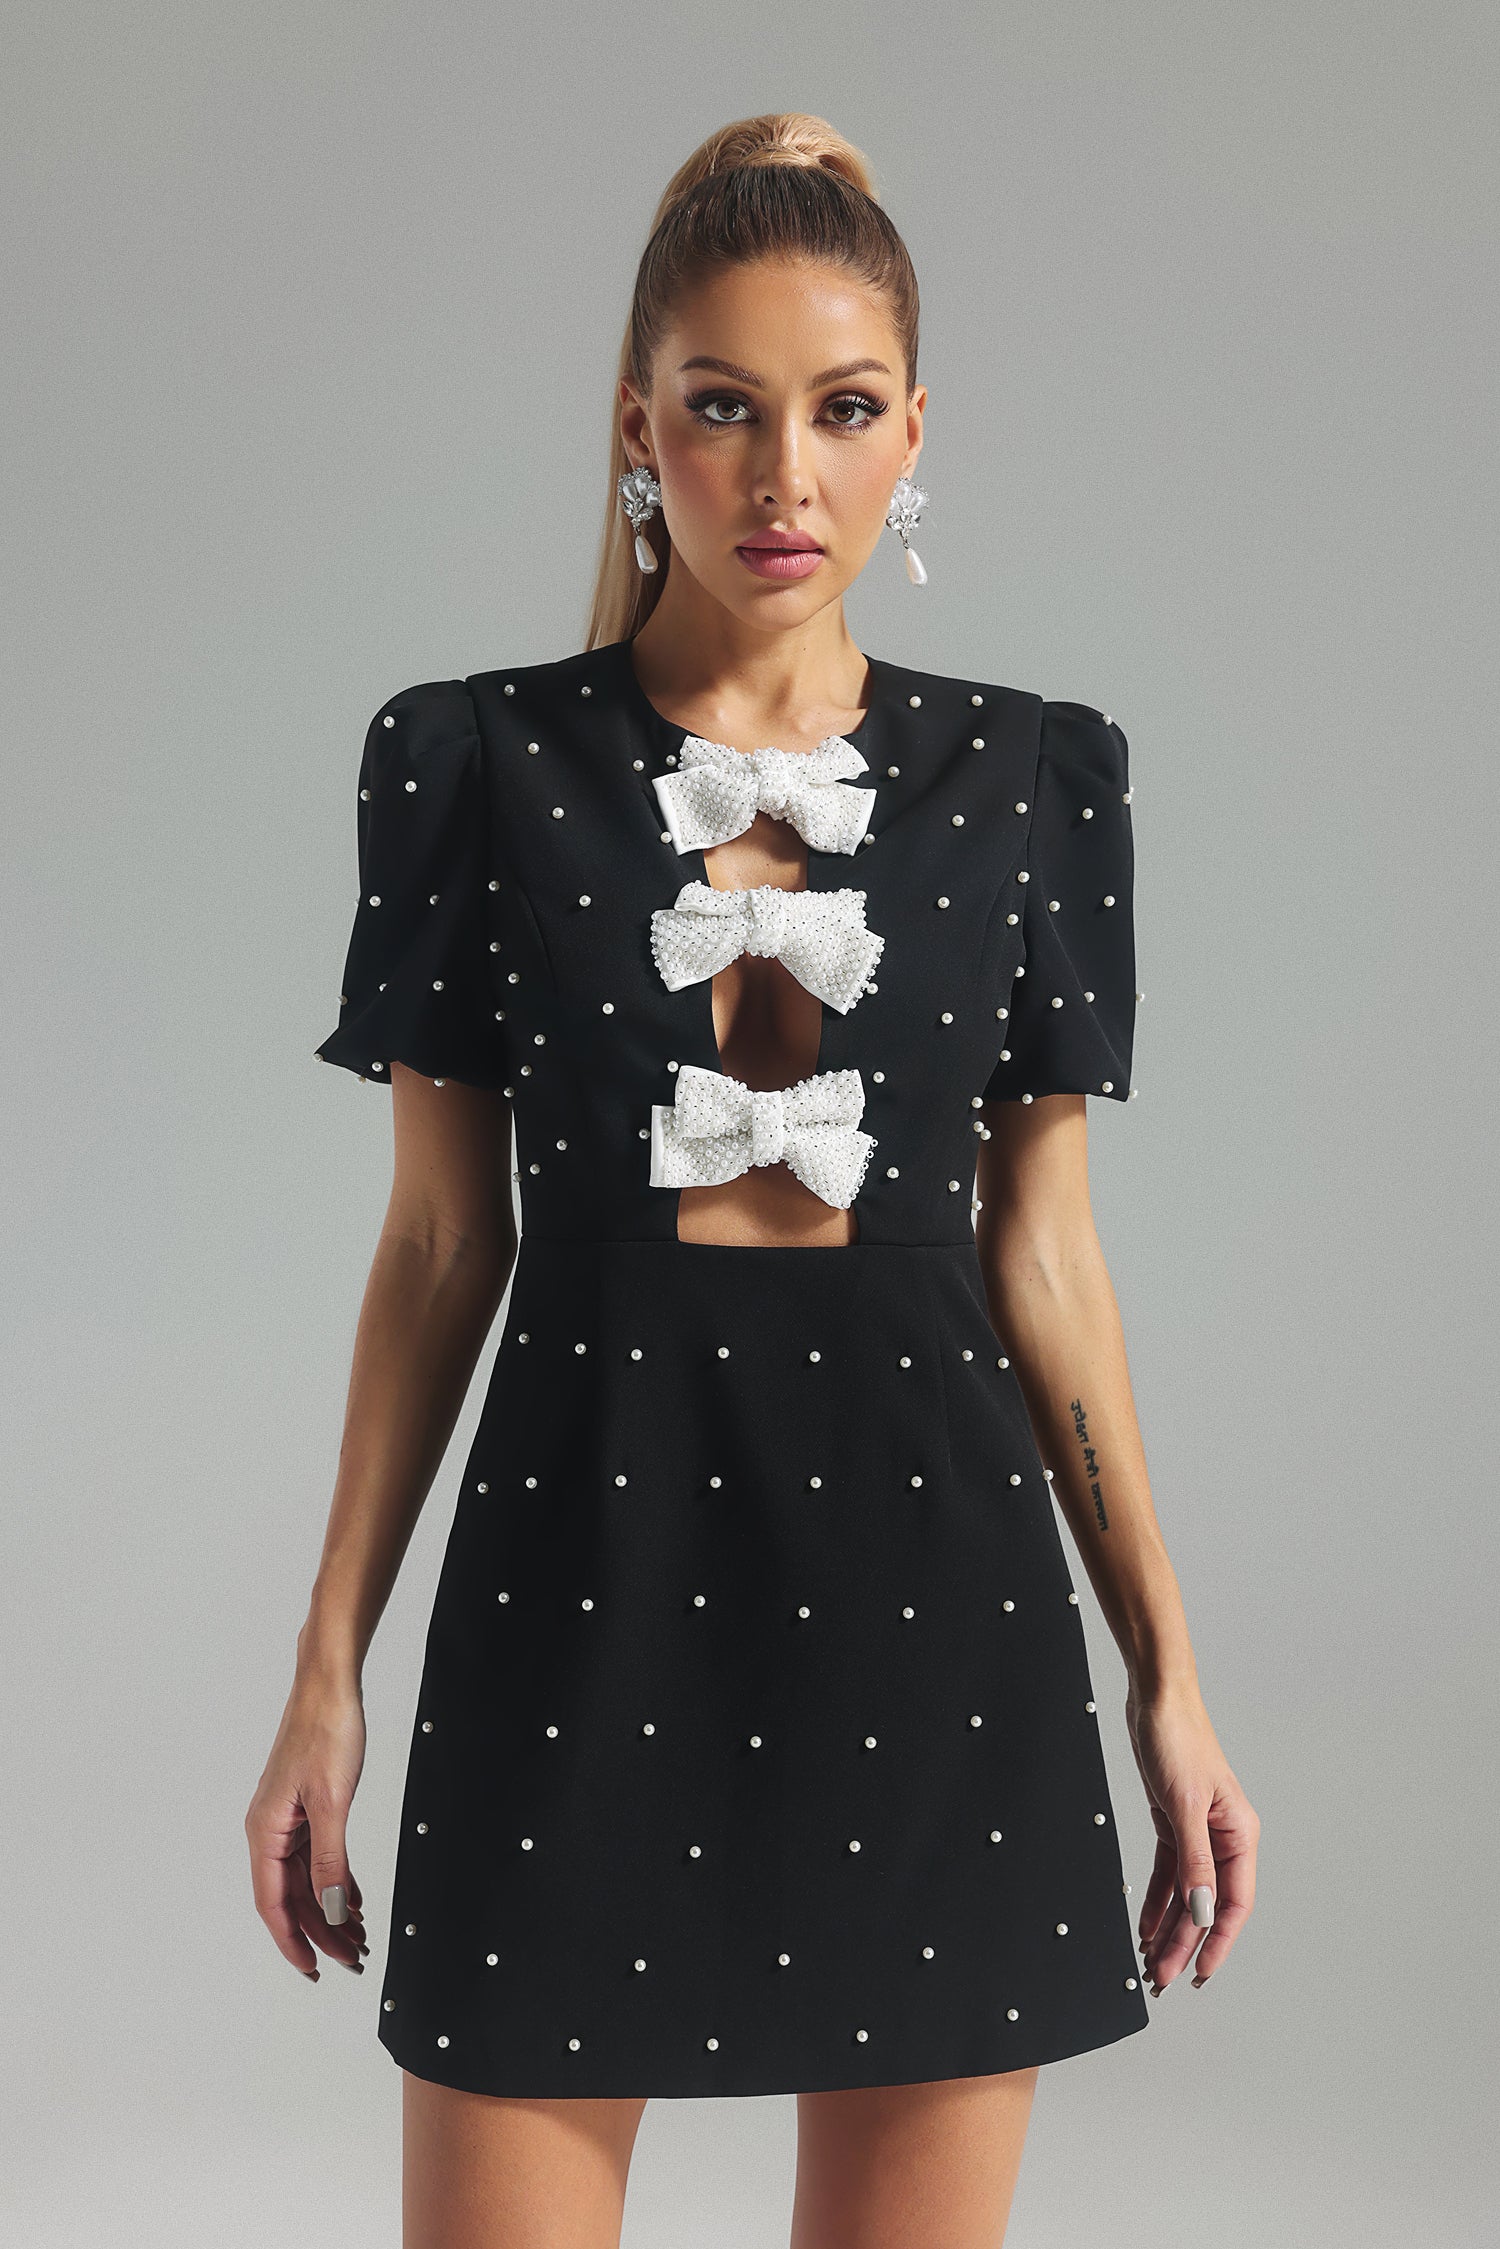 Karolina Pearl Bow knot Mini Dress